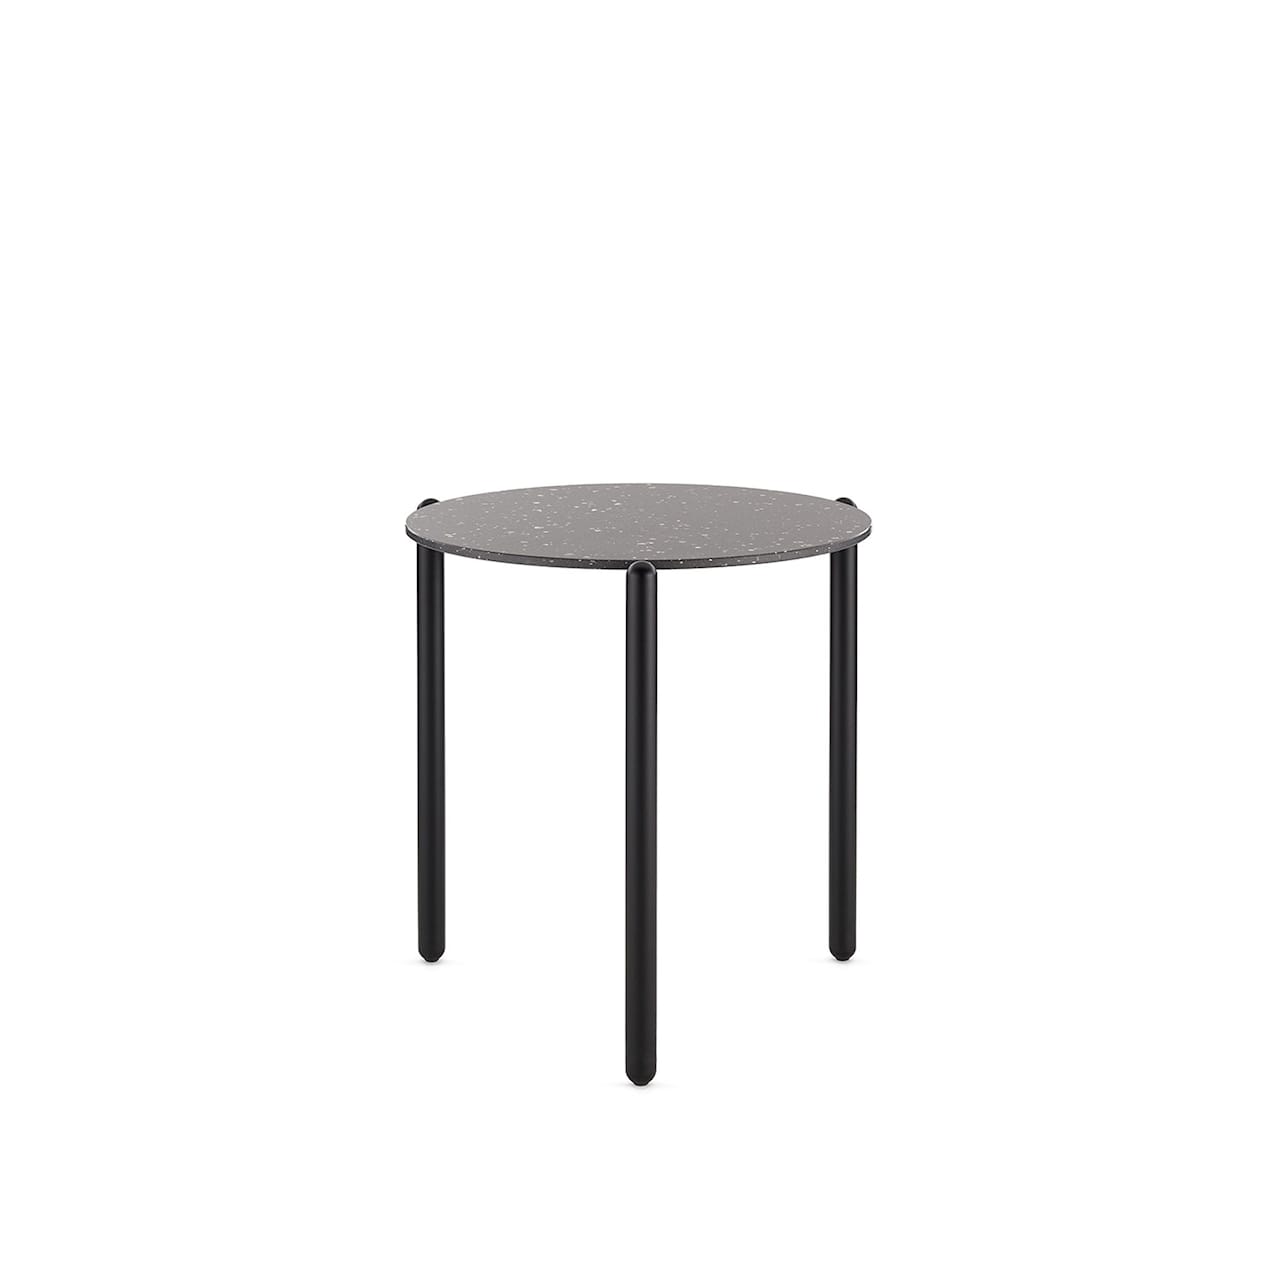 Undique Low Table 48x51